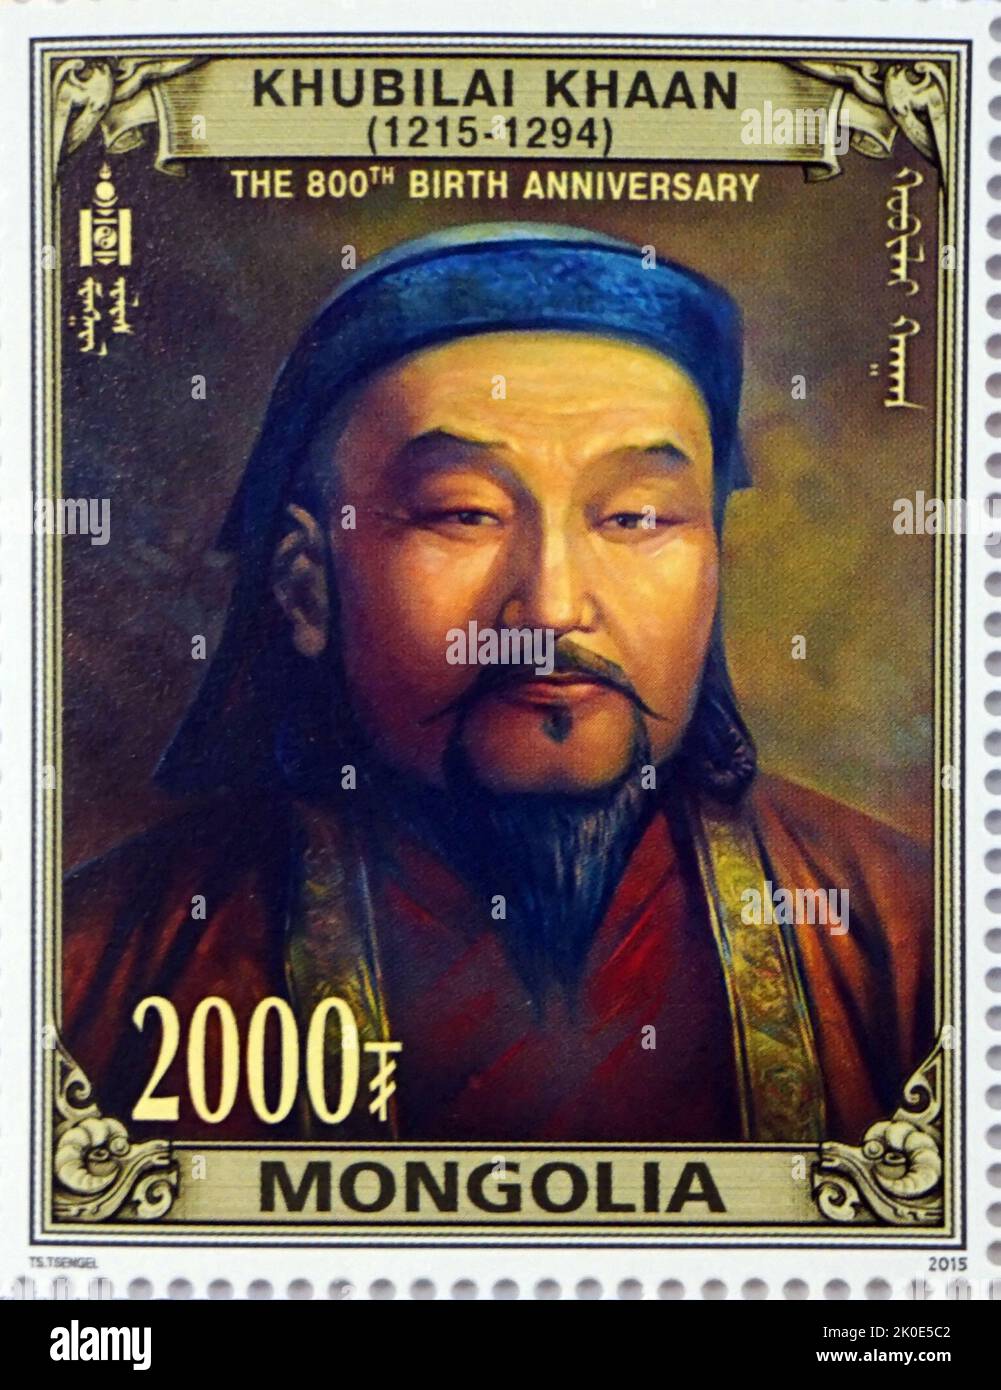 Genghis Khan (ca.1158 - 1227), nato Temujin, il fondatore e primo grande Khan (imperatore) dell'Impero Mongolo, che divenne il più grande impero contiguo della storia dopo la sua morte. Venne al potere unendo molte delle tribù nomadi del nord-est asiatico. Foto Stock